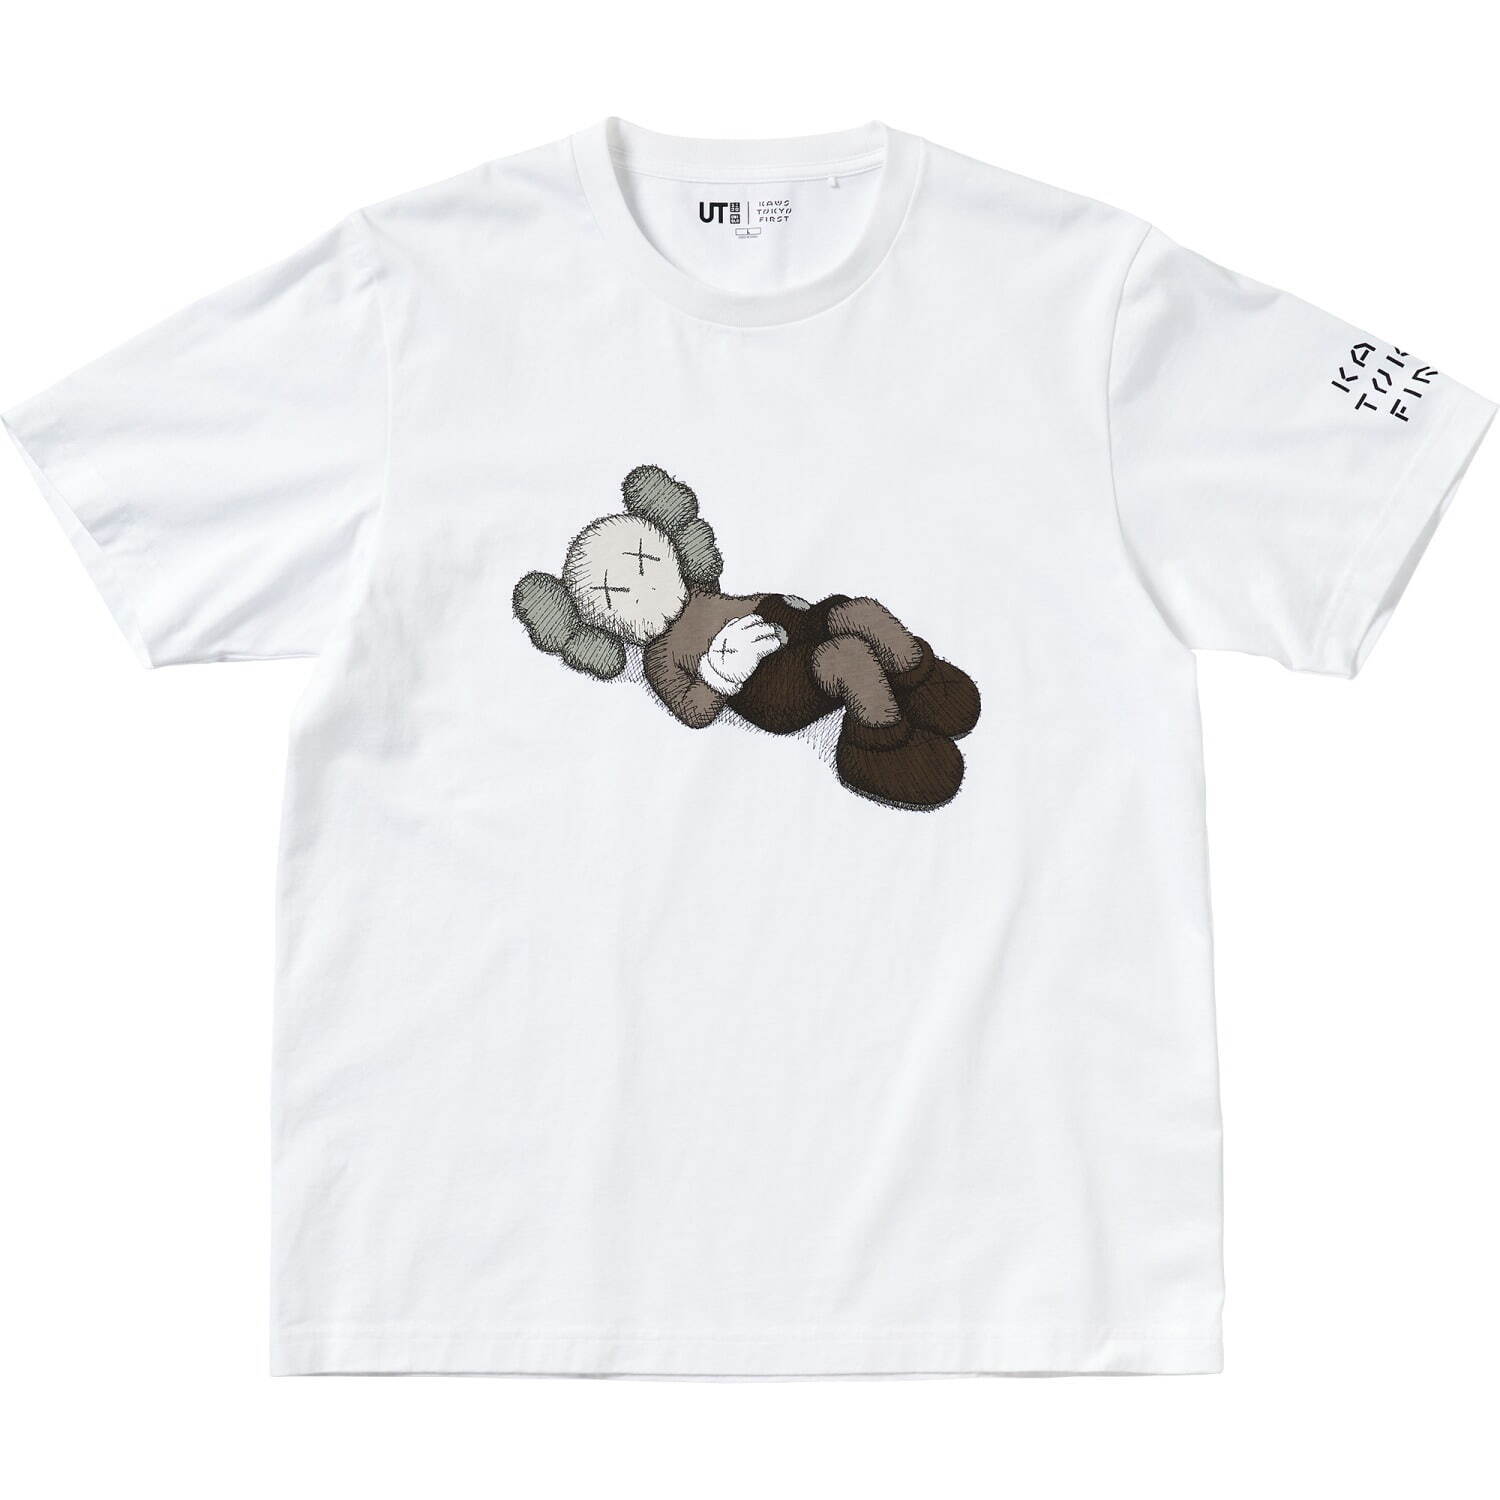 「KAWS UT」メンズ Tシャツ 1,500円
© KAWS